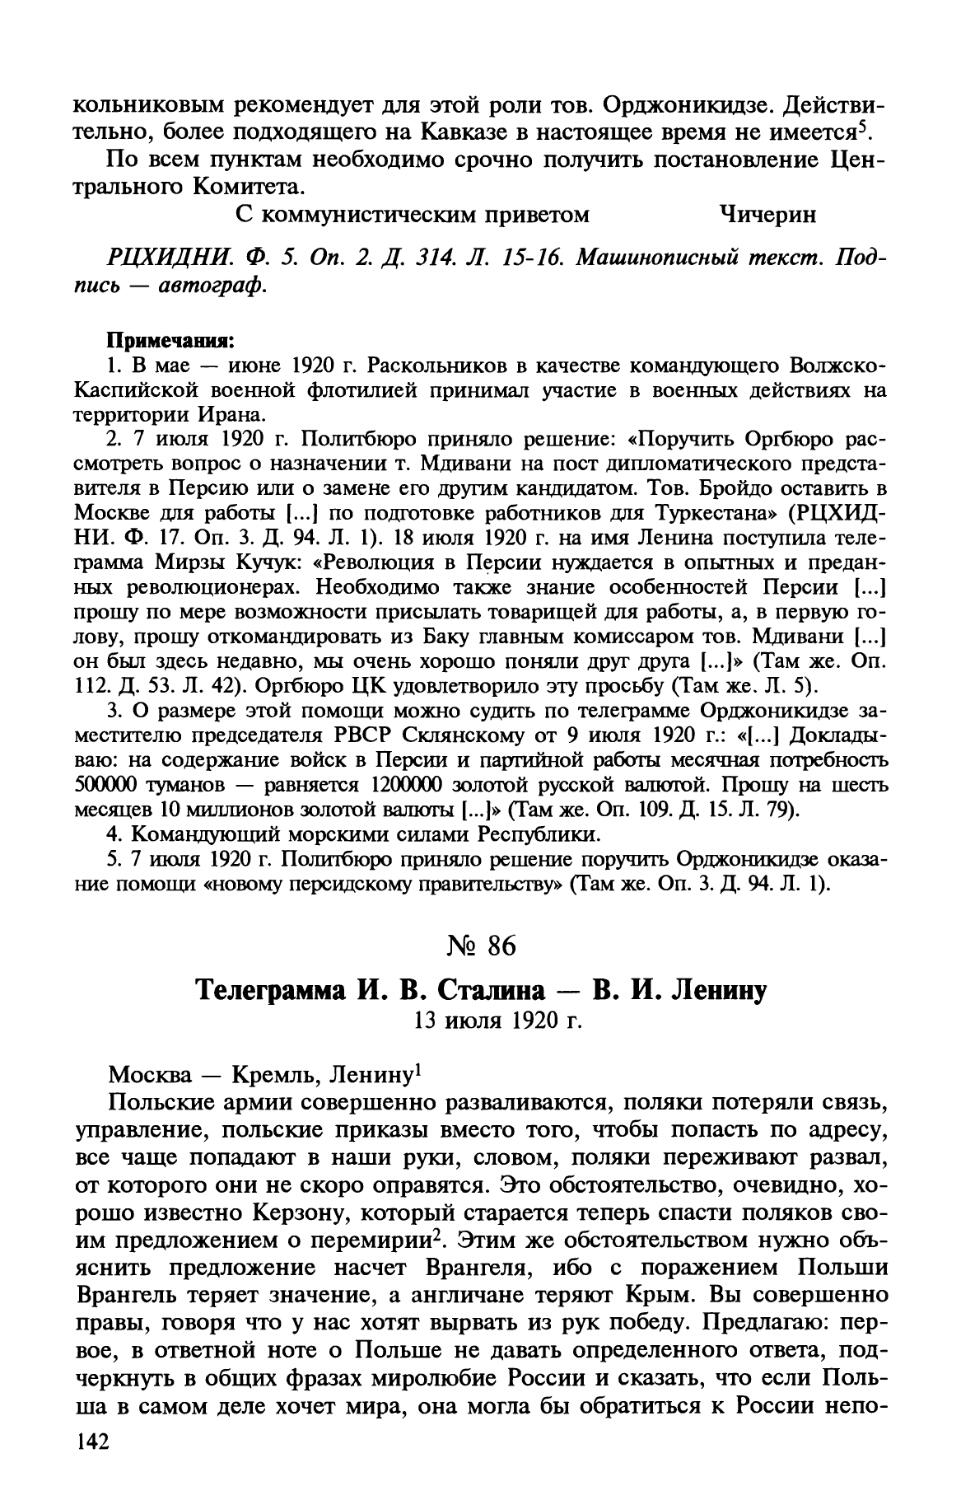 86. Телеграмма И. В. Сталина — В. И. Ленину. 13 июля 1920 г.